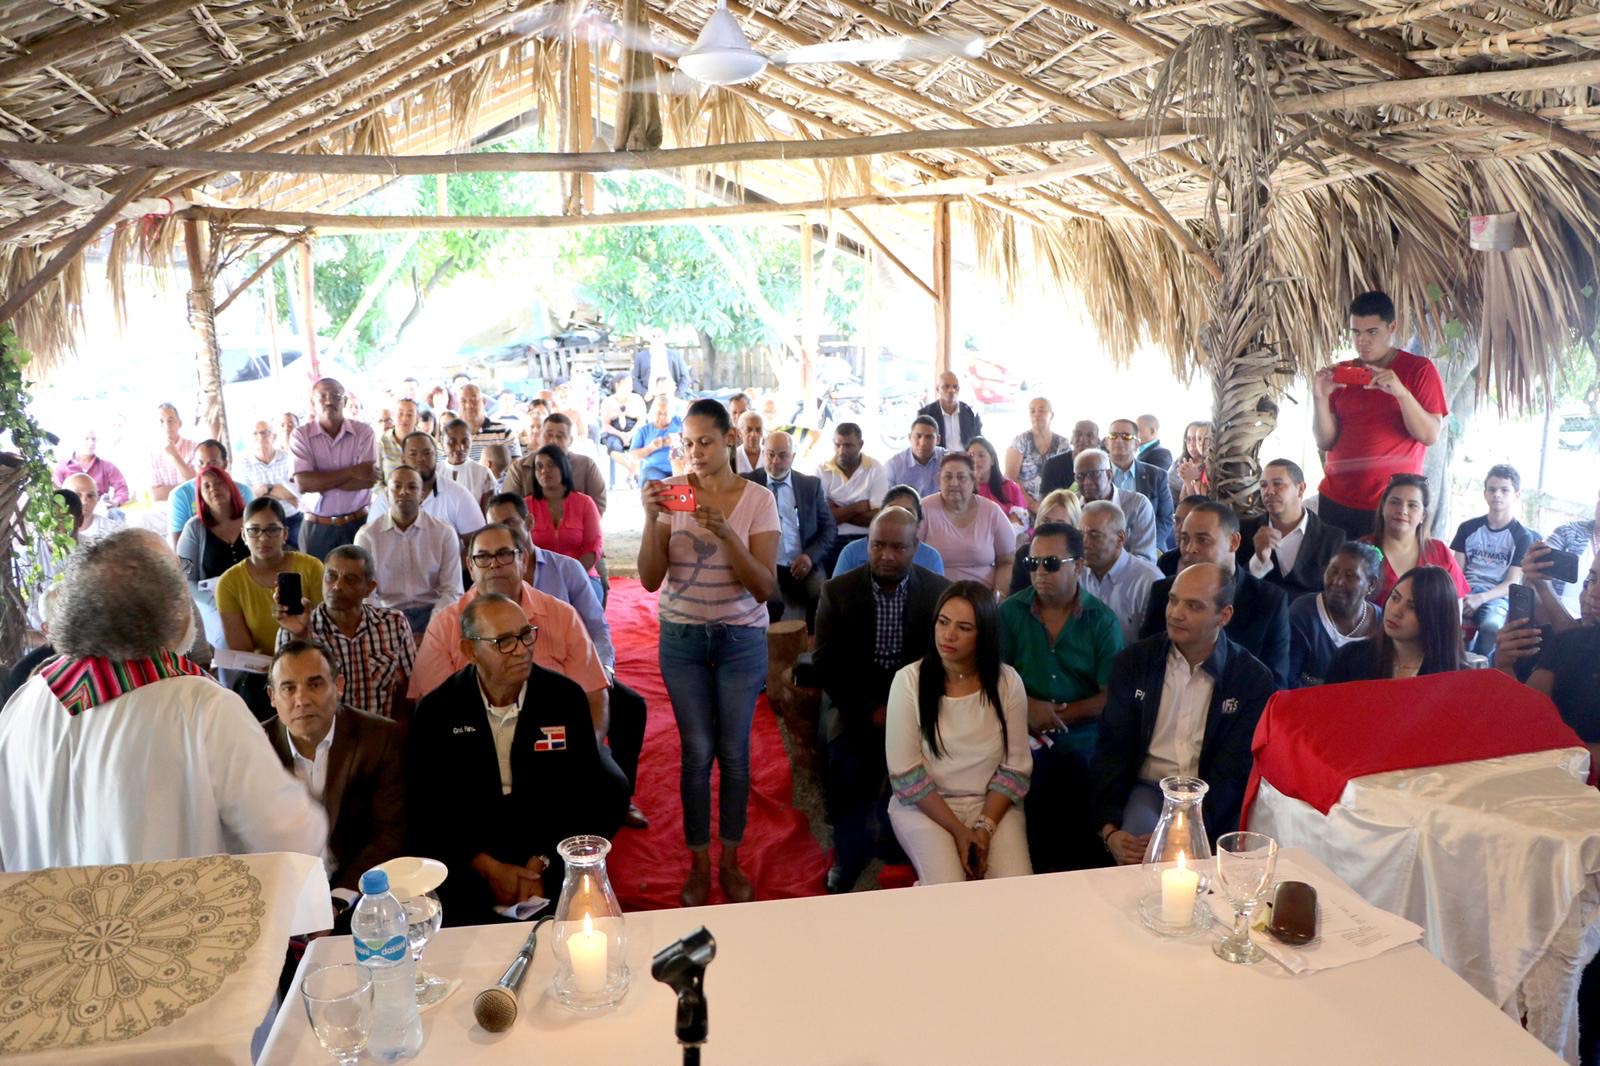 Ramfis visita la iglesia del pueblo y exhorta a los dominicanos a buscar candidatos no políticos